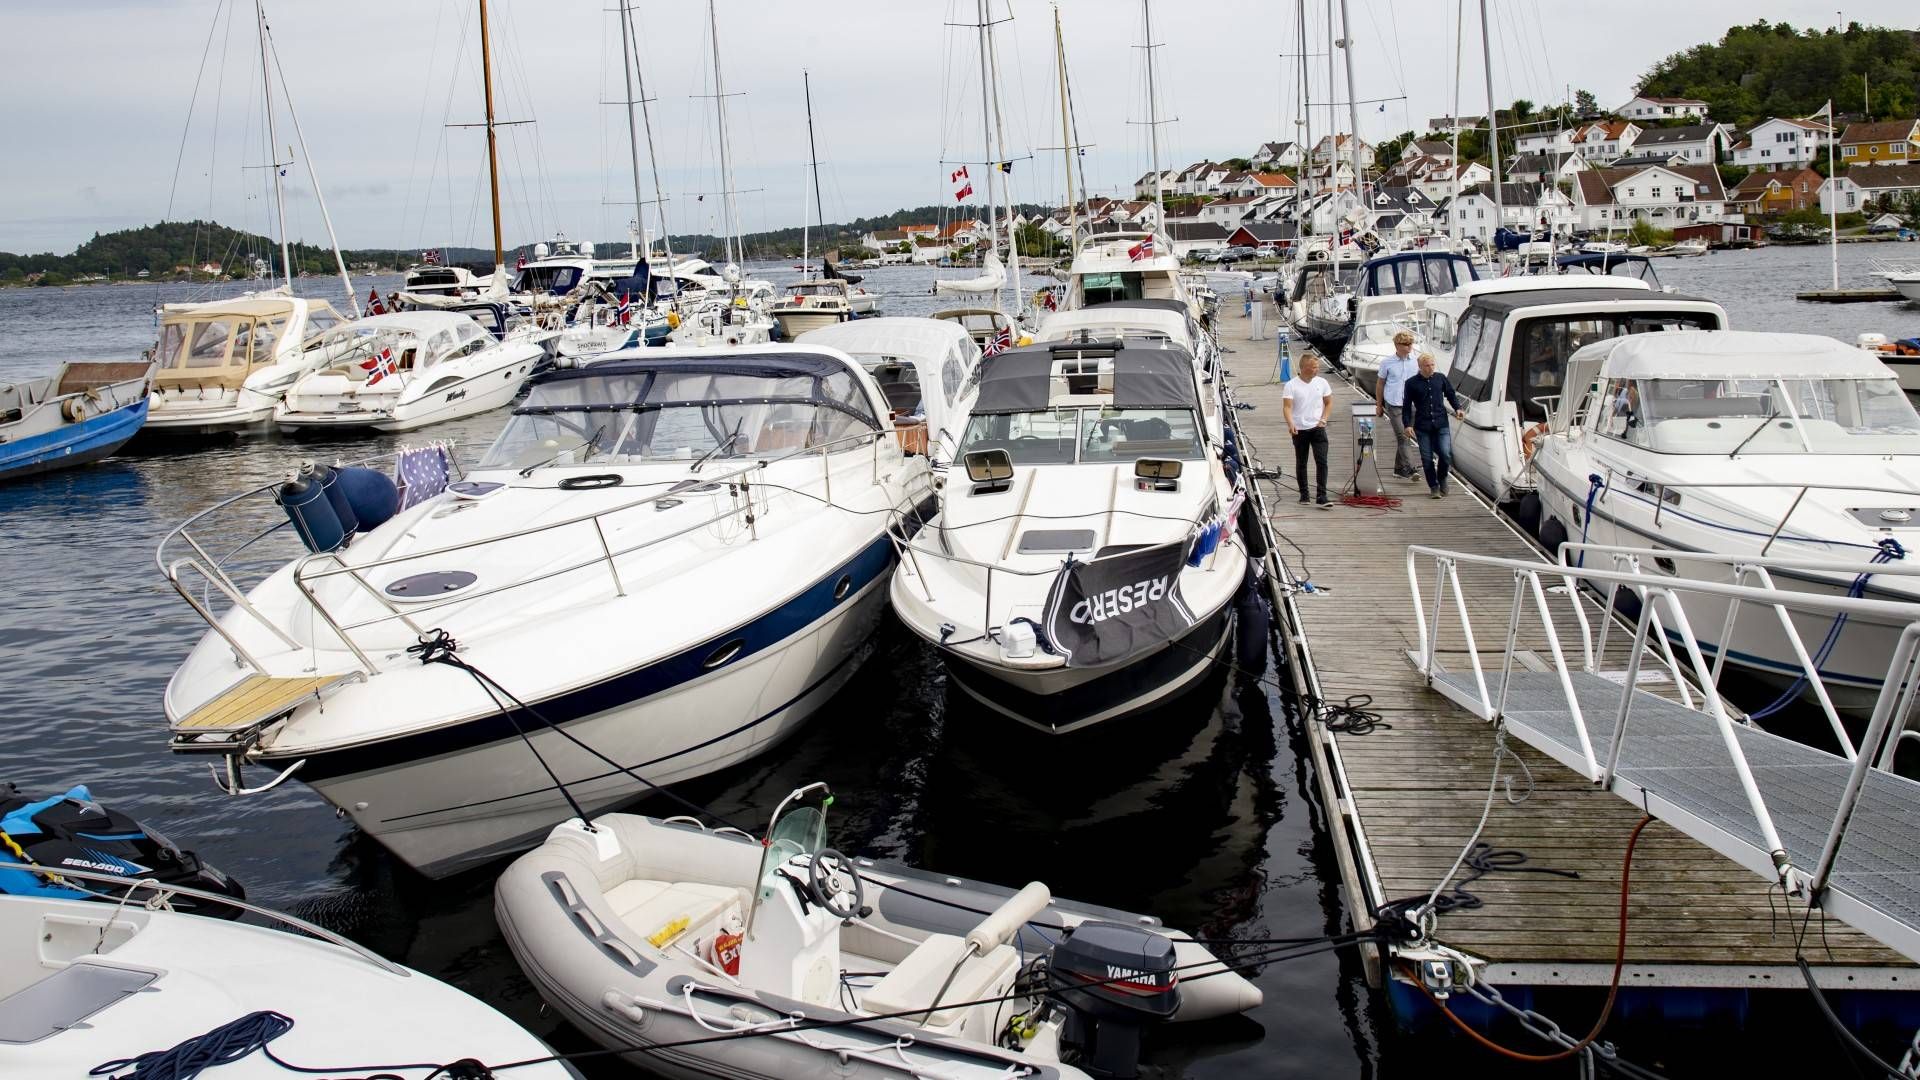 Tett mellom båtene i Kragerø tidligere i sommer. | Foto: Geir Olsen / NTB scanpix